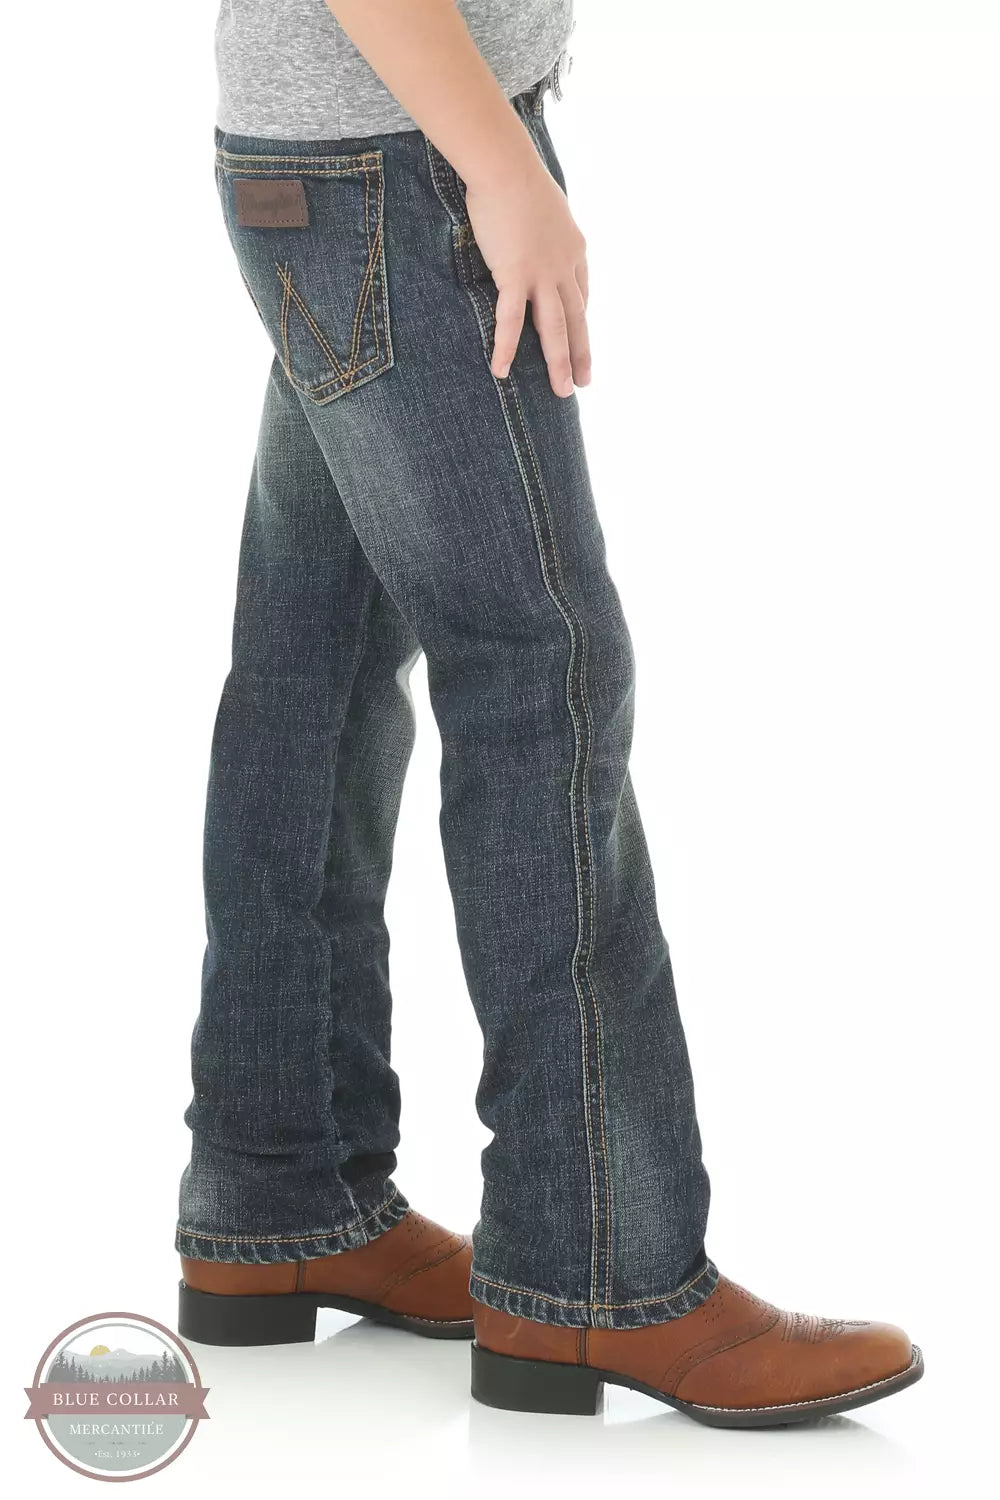 Wrangler 88JWZBZ Toddler Retro® Slim Straight Jeans in Bozeman Side View